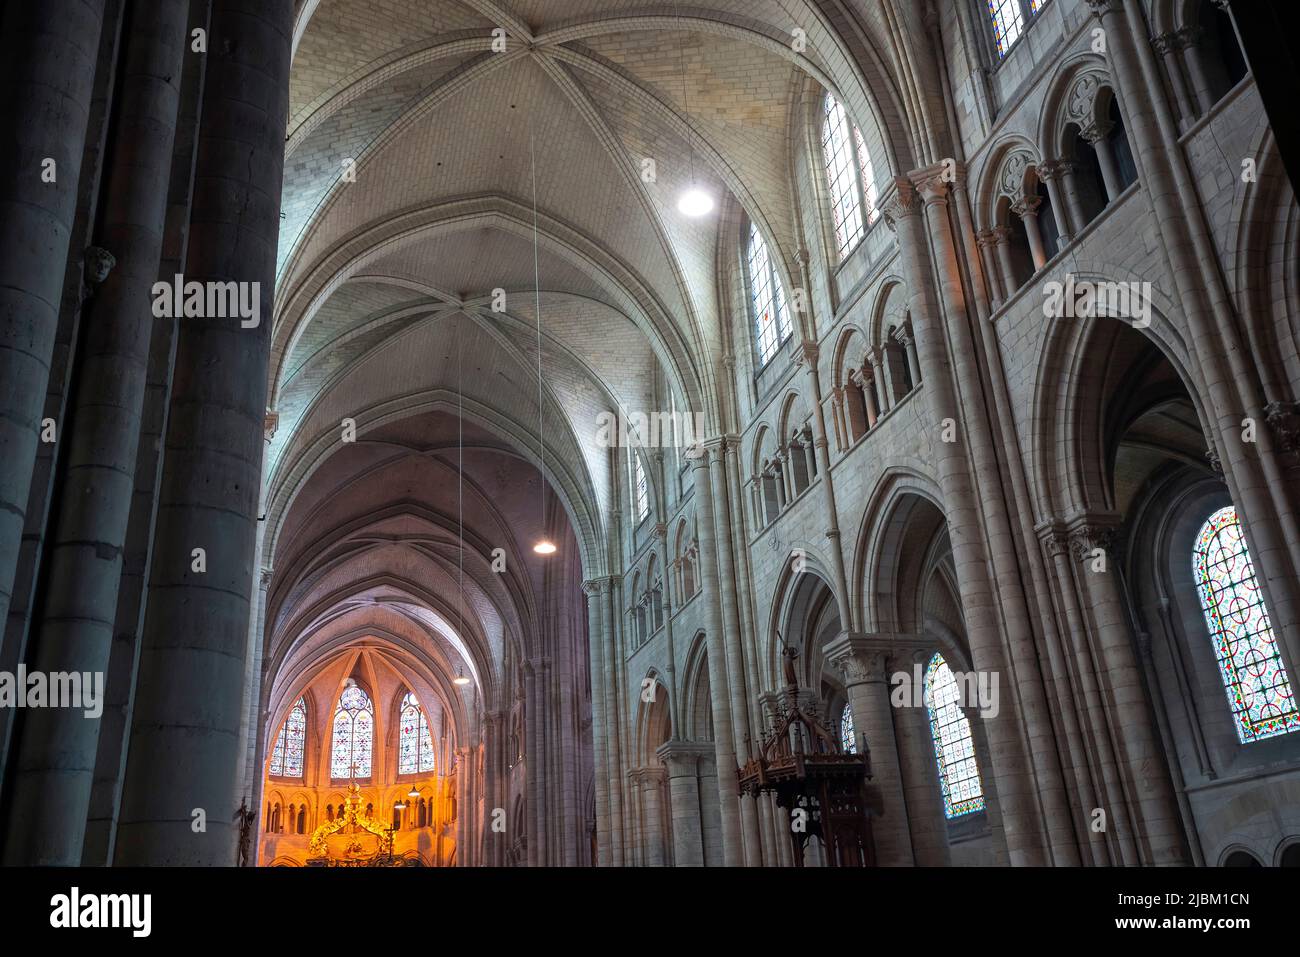 Nave central de la catedral de Sens Saint-Etienne. Sens Cathedral es una catedral católica en Sens, en Borgoña, Francia. Foto de stock